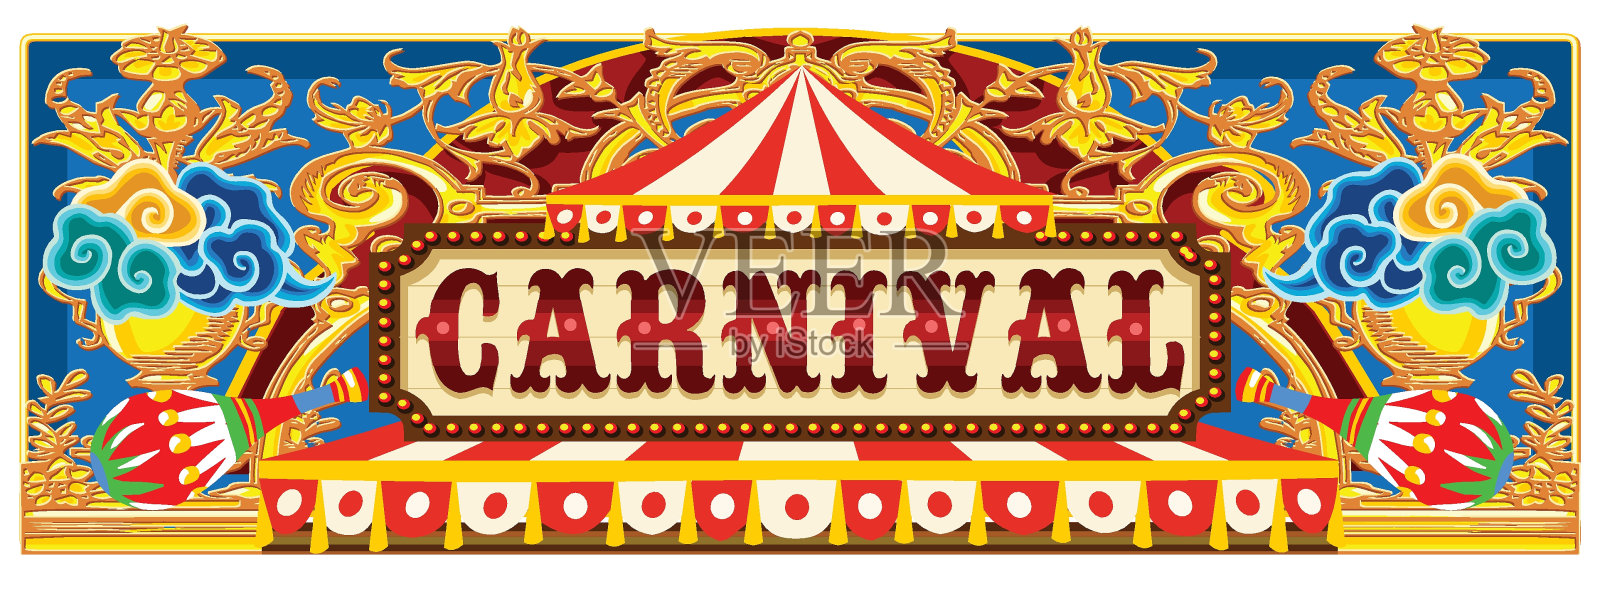 带马戏团帐篷的狂欢节横幅插画图片素材